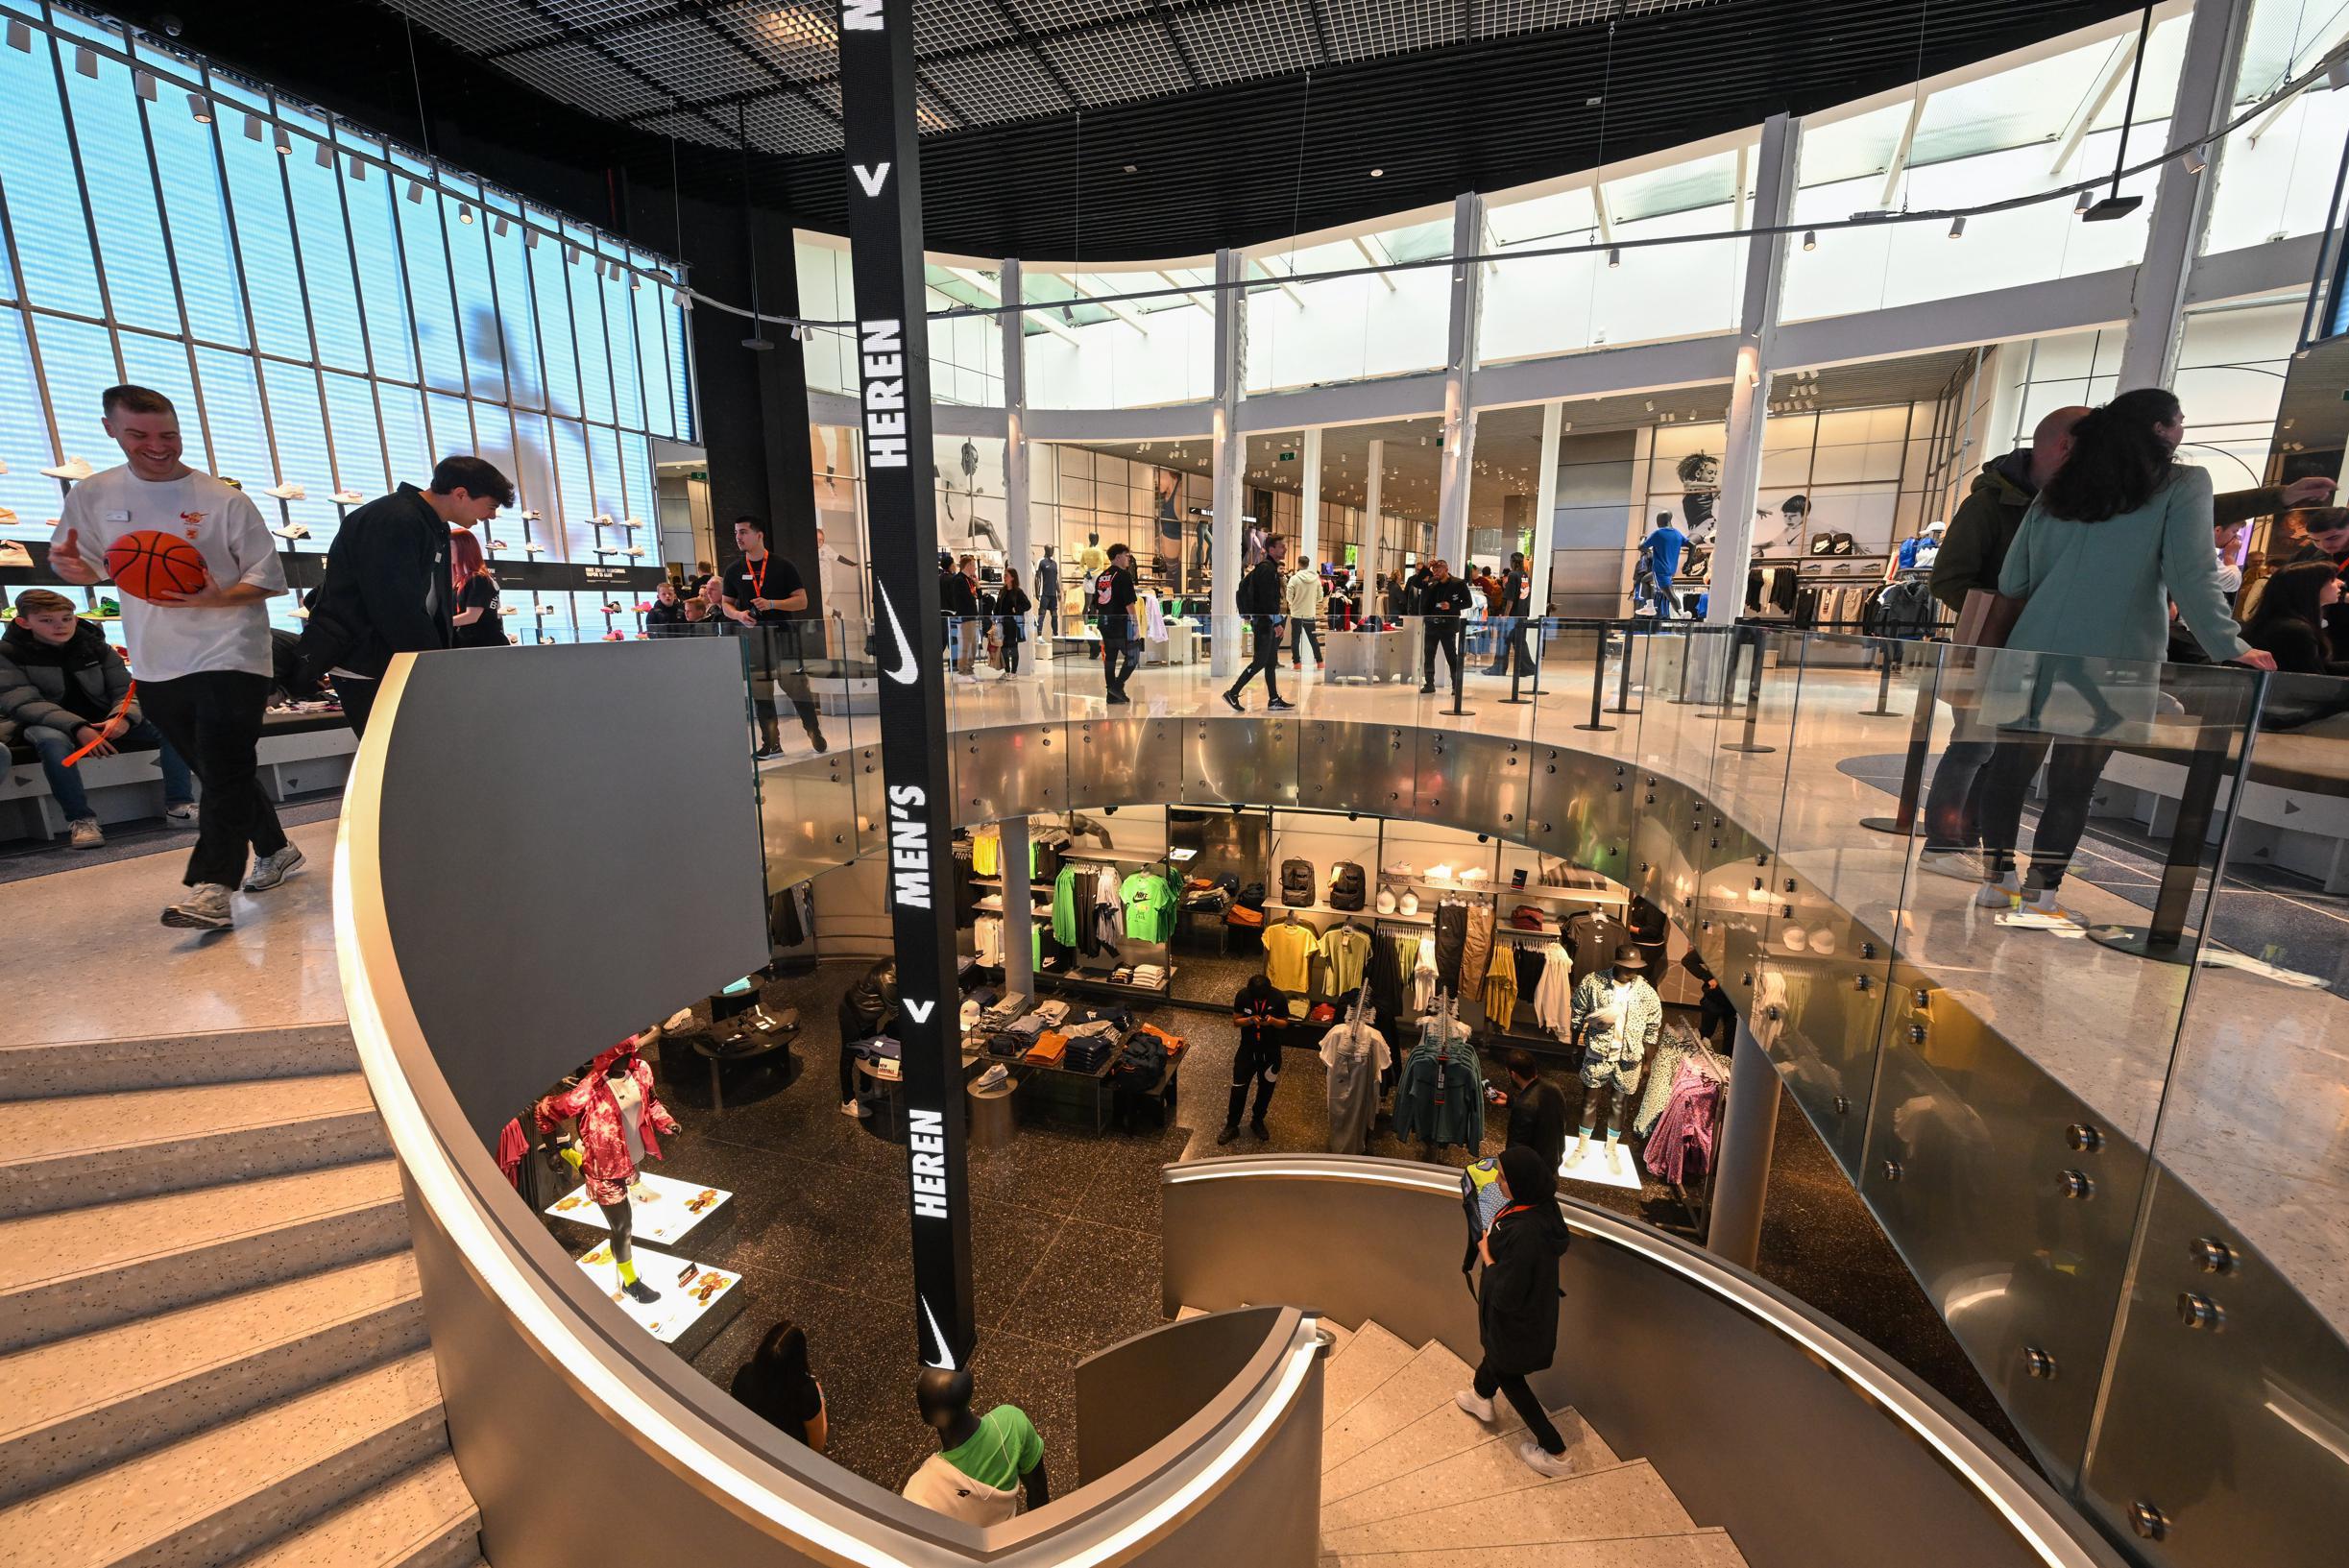 Nike opent nieuwe winkel op Meir: heeft grote winkel nodig” (Antwerpen) | Gazet van Antwerpen Mobile